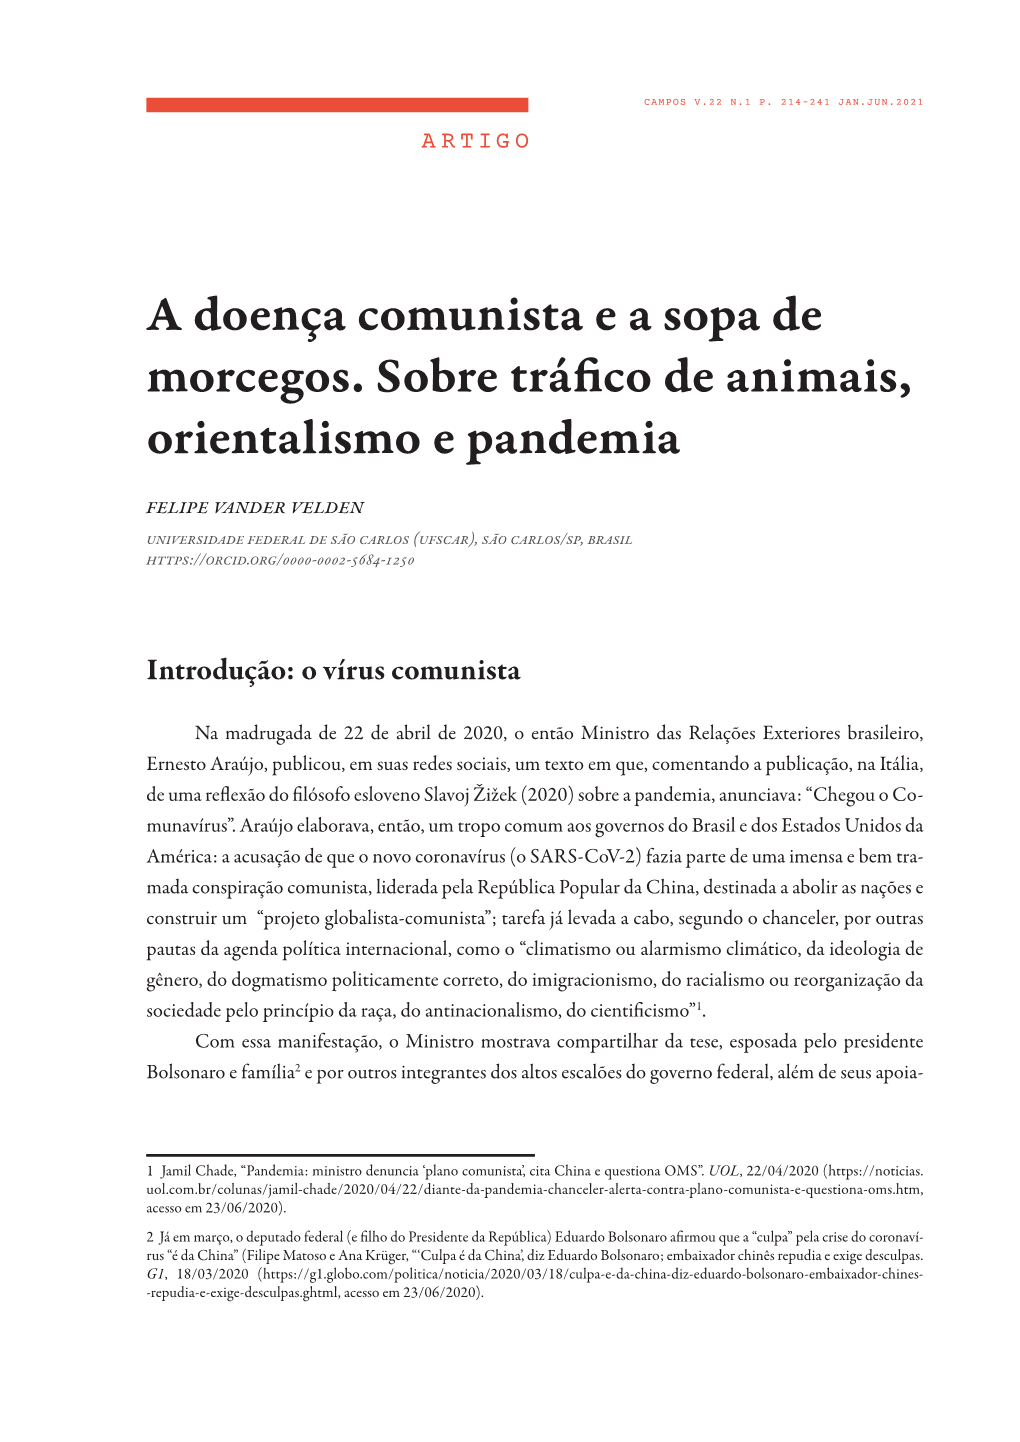 A Doença Comunista E a Sopa De Morcegos. Sobre Tráfico De Animais, Orientalismo E Pandemia